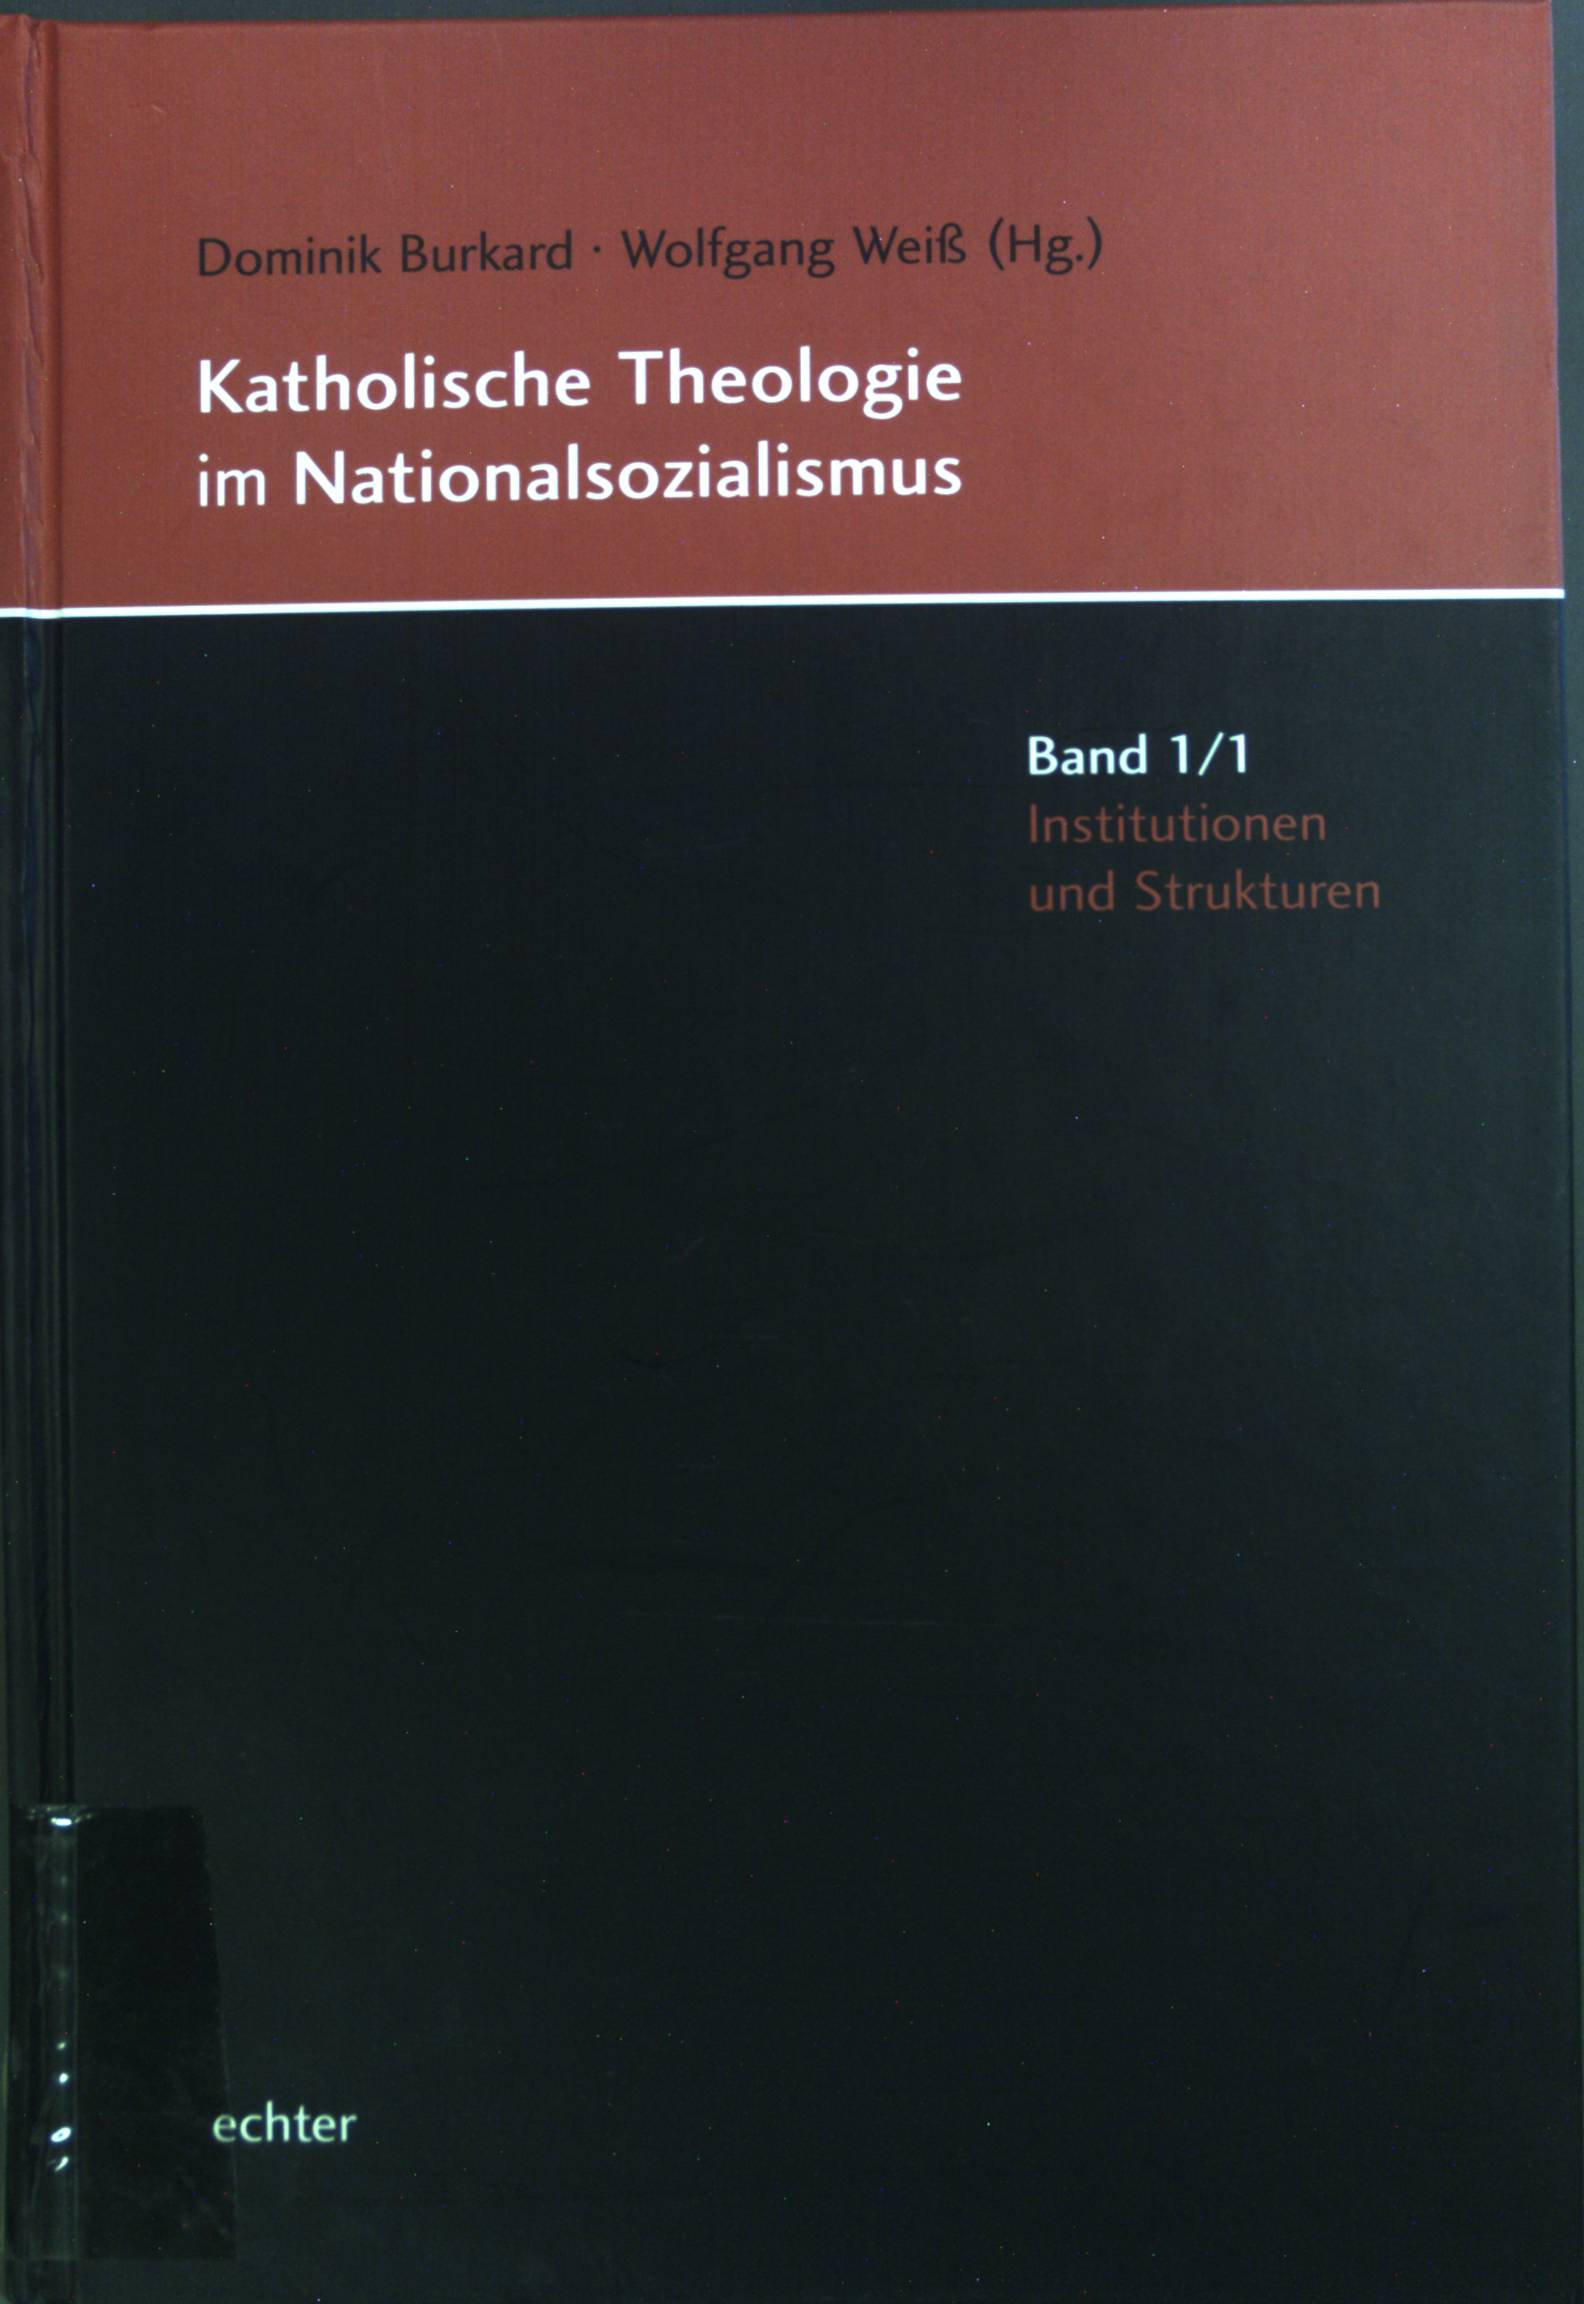 Katholische Theologie im Nationalsozialismus: Bd. 1; Institutionen und Strukturen. - Burkard, Dominik und Wolfgang Weiss